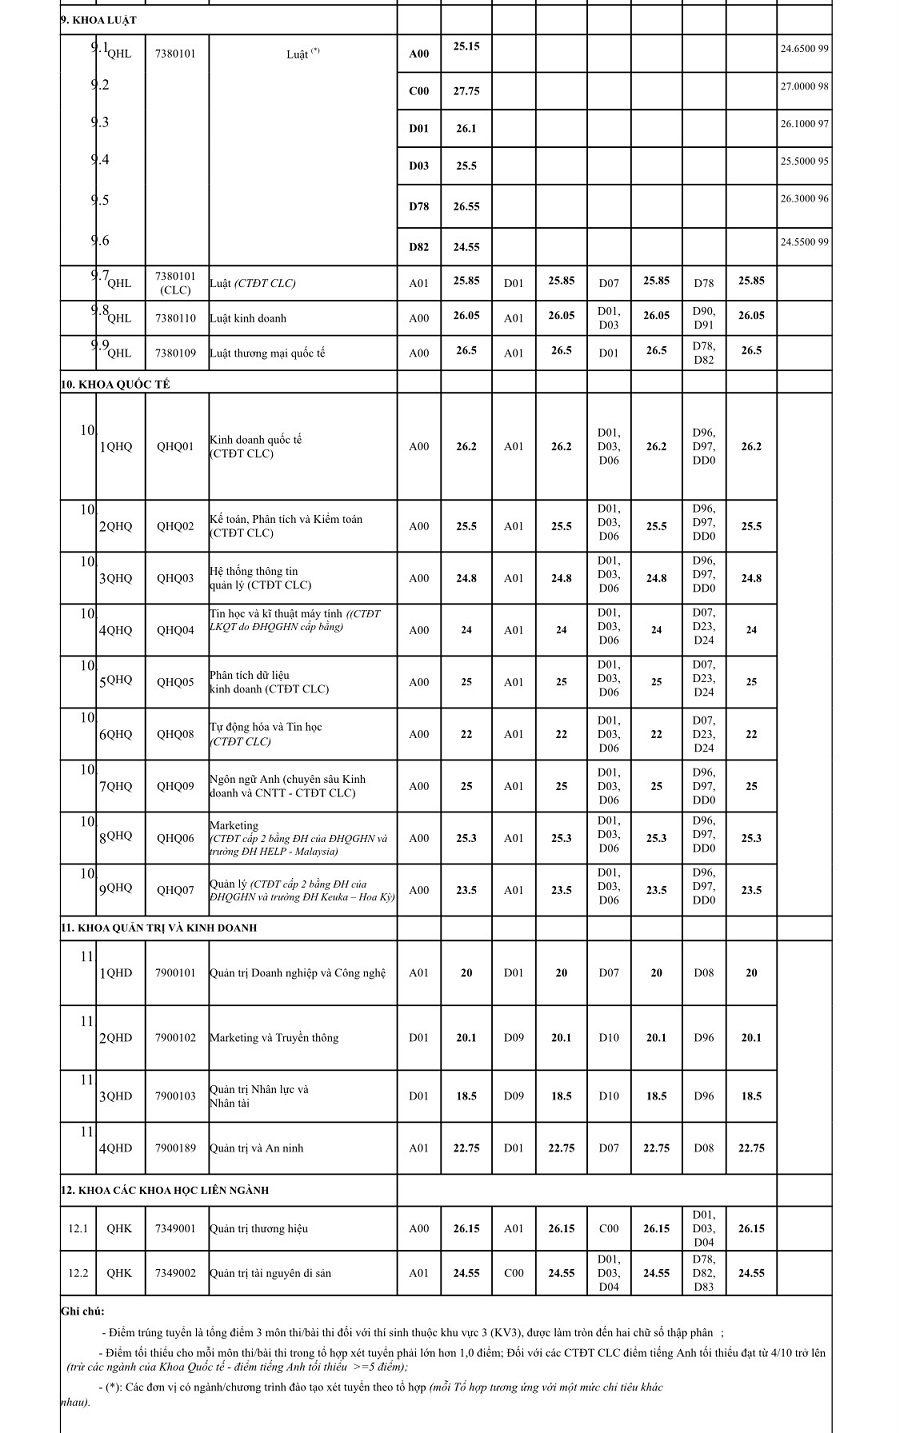 Điểm chuẩn của các trường trực thuộc ĐH Quốc gia Hà Nội năm 2021 - Ảnh 4